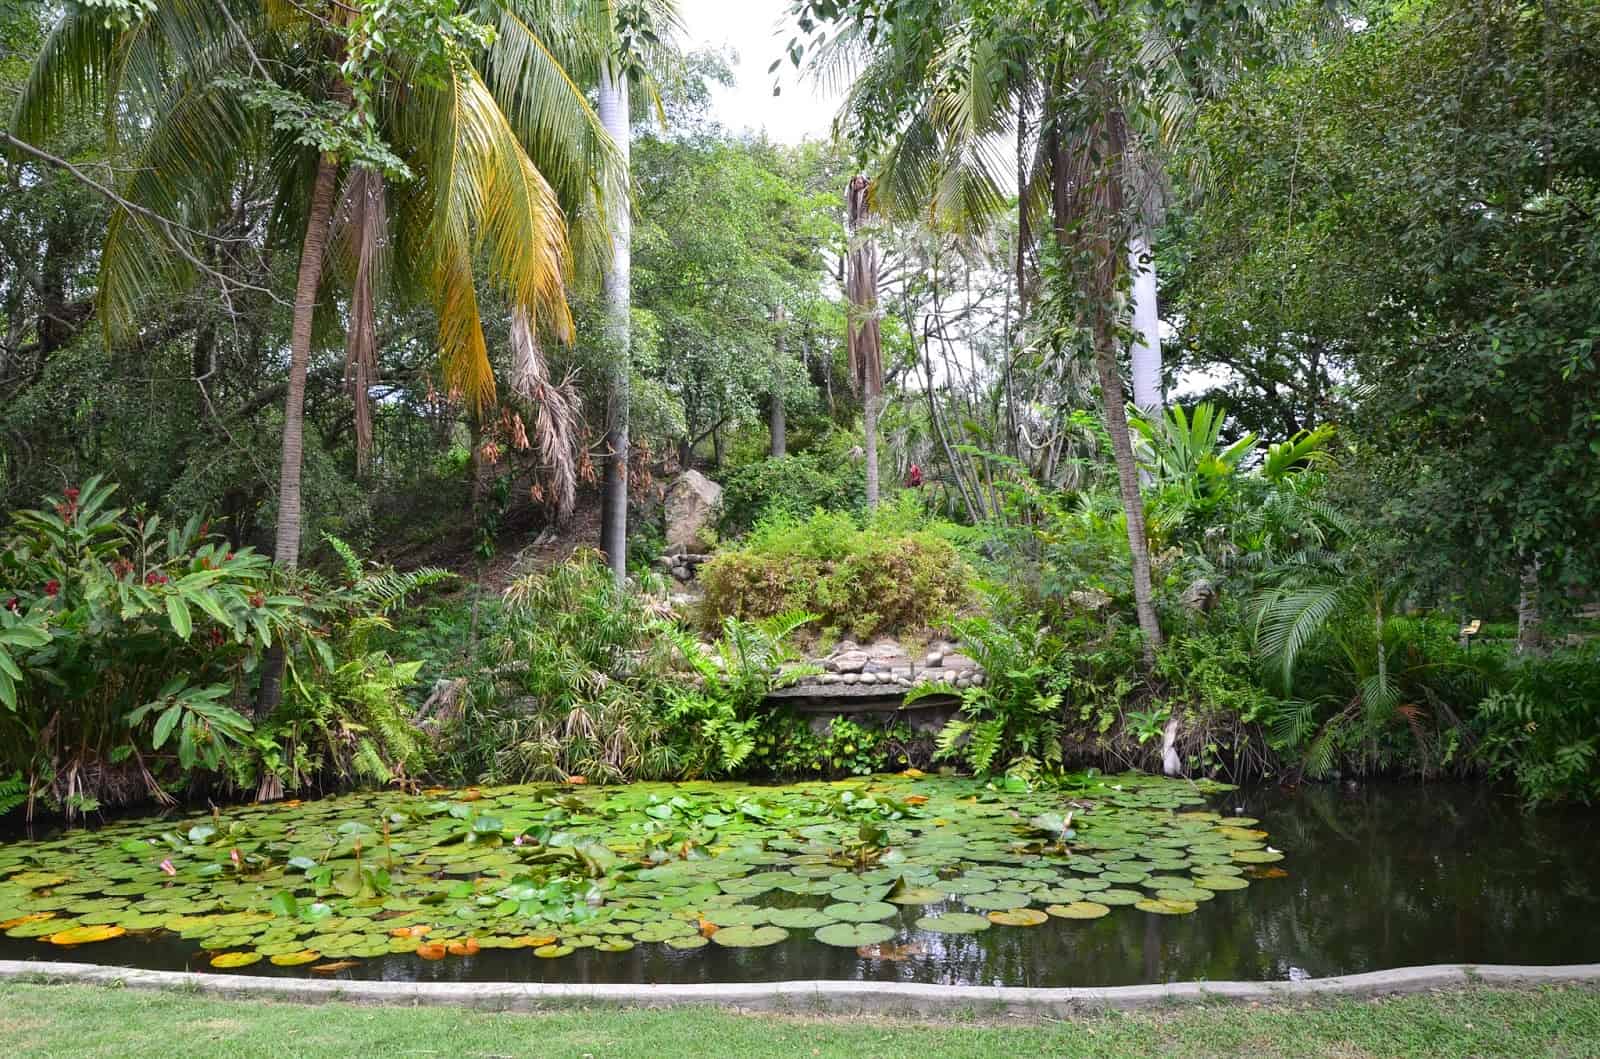 Botanical garden at La Quinta de San Pedro Alejandrino in Santa Marta, Magdalena, Colombia